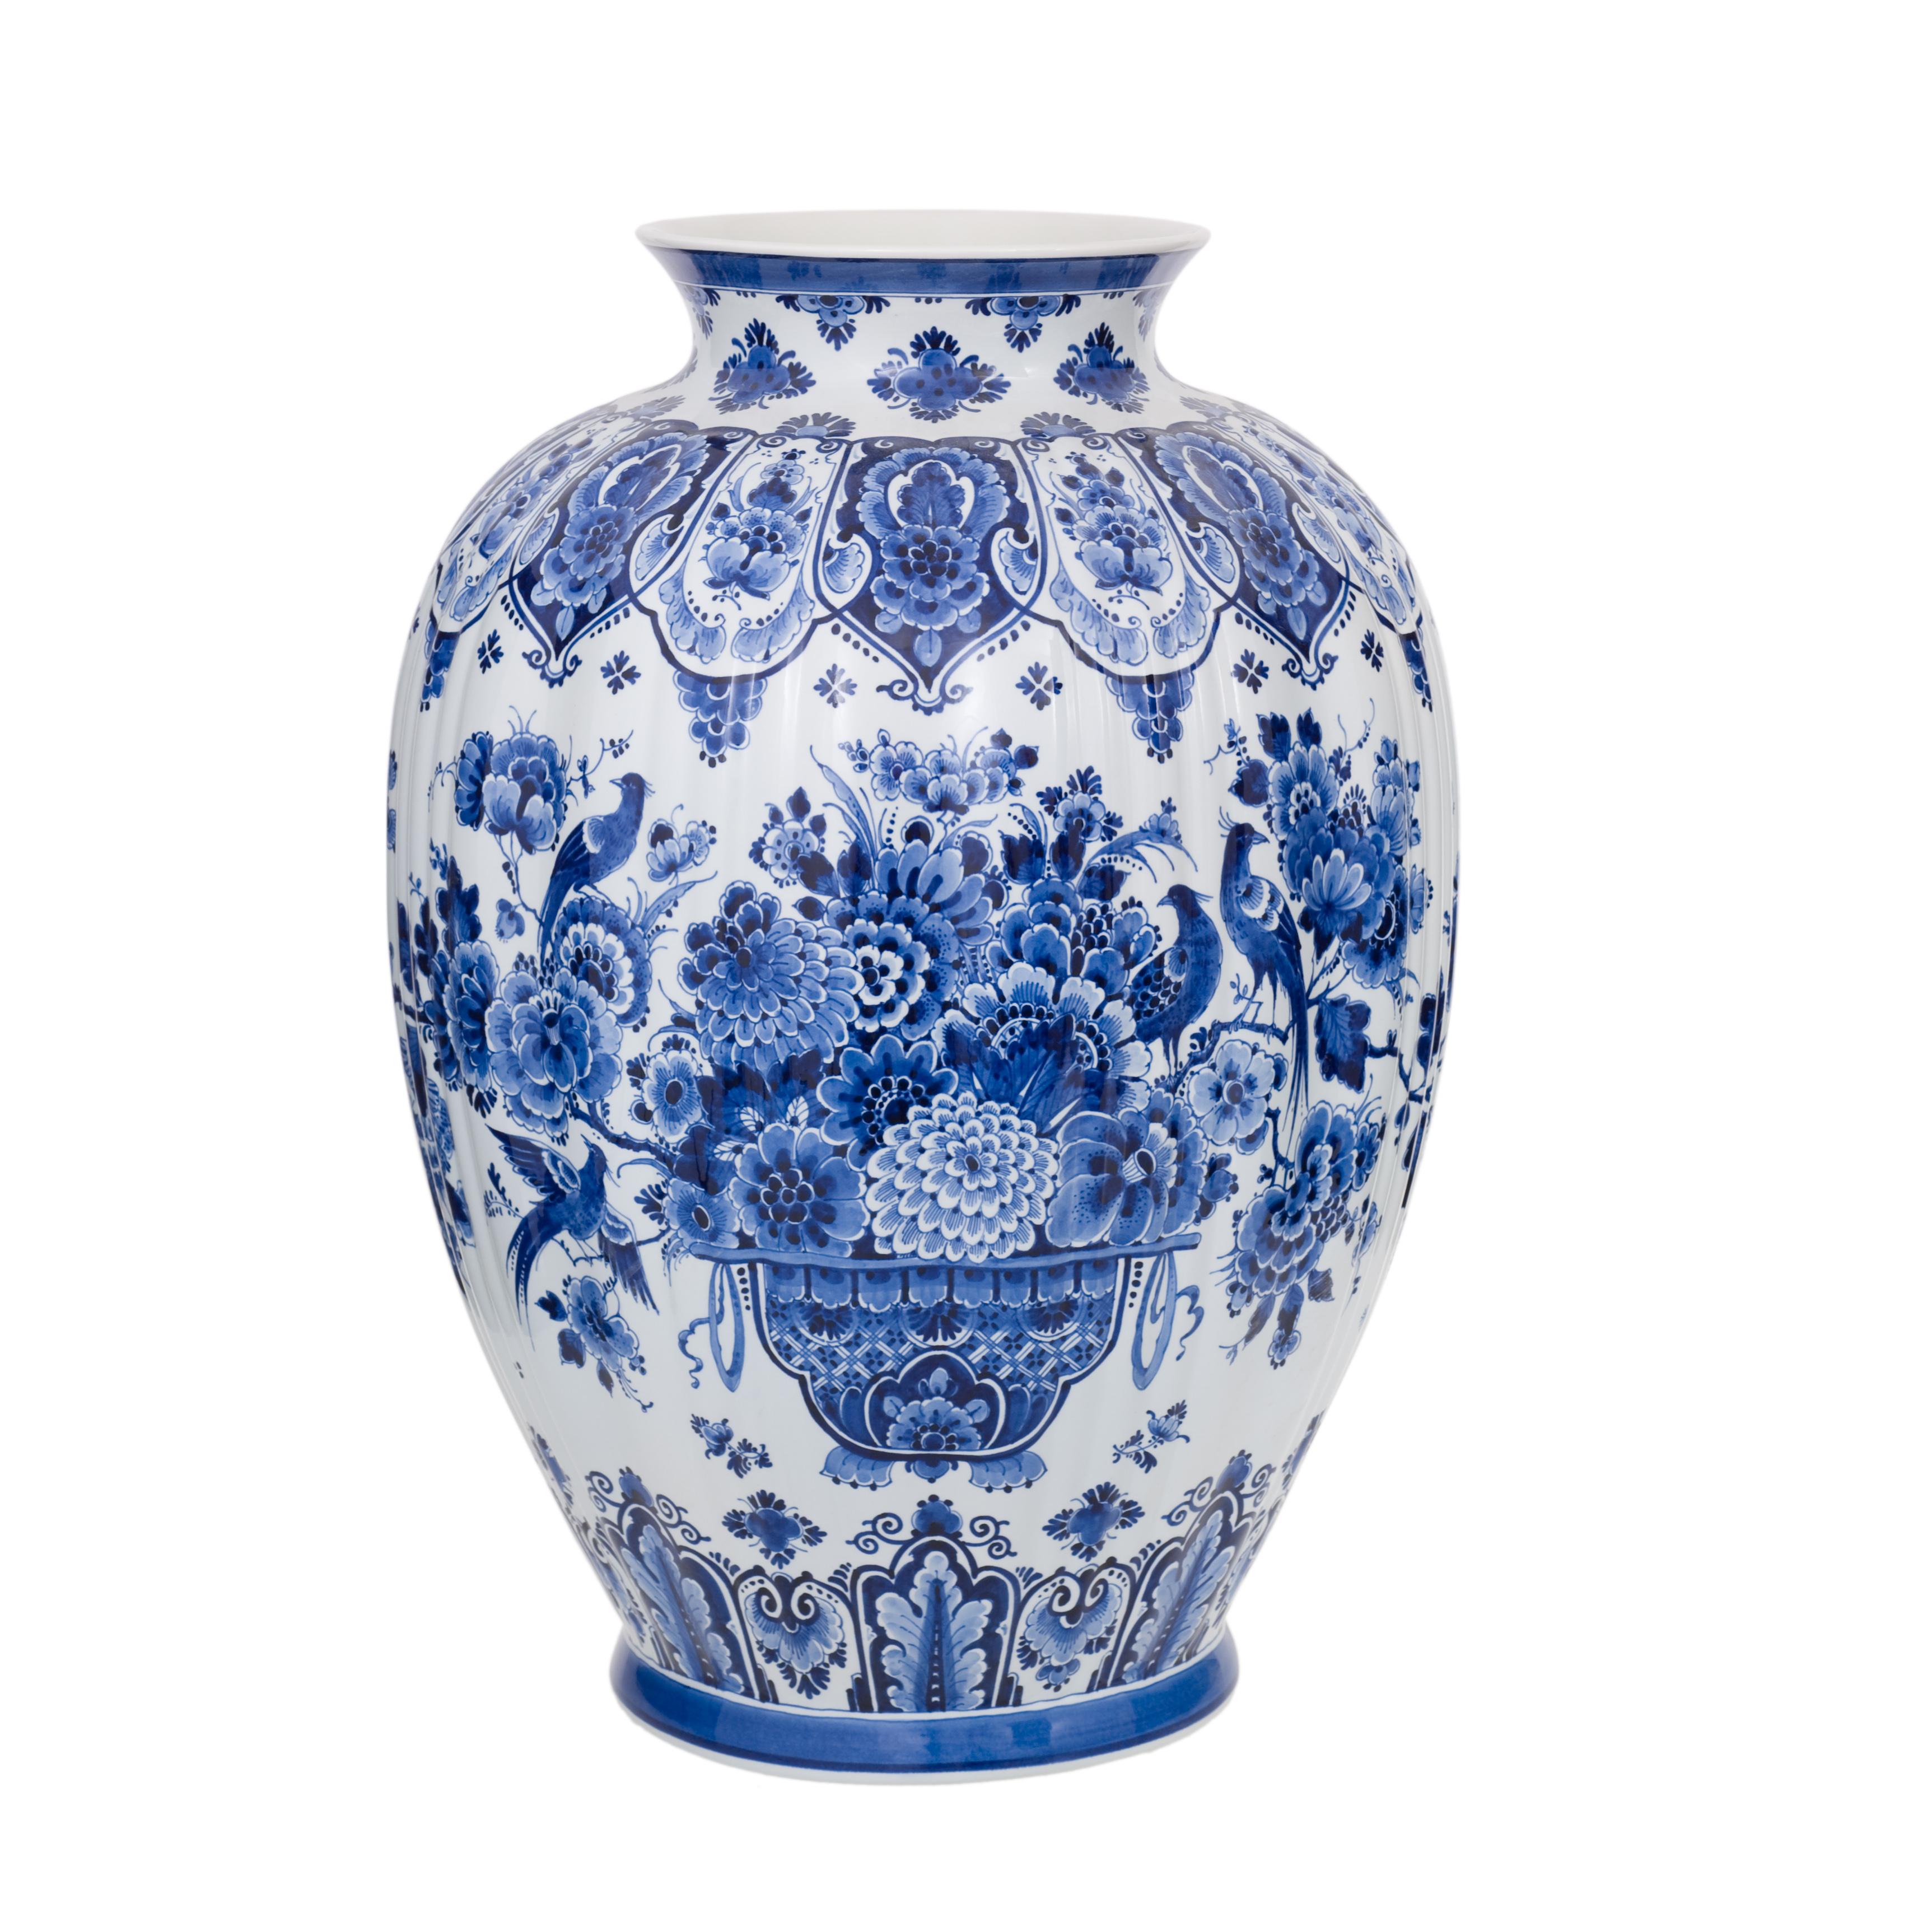 Ausschließlich handgefertigt im Atelier von Royal Delft in den Niederlanden. Diese Vase wurde von einem der Meistermaler von Royal Delft handbemalt. Die Vase ist reich verziert mit Blumenkorb- und Vogelmotiven in original Delfter Blau. Die Größe und